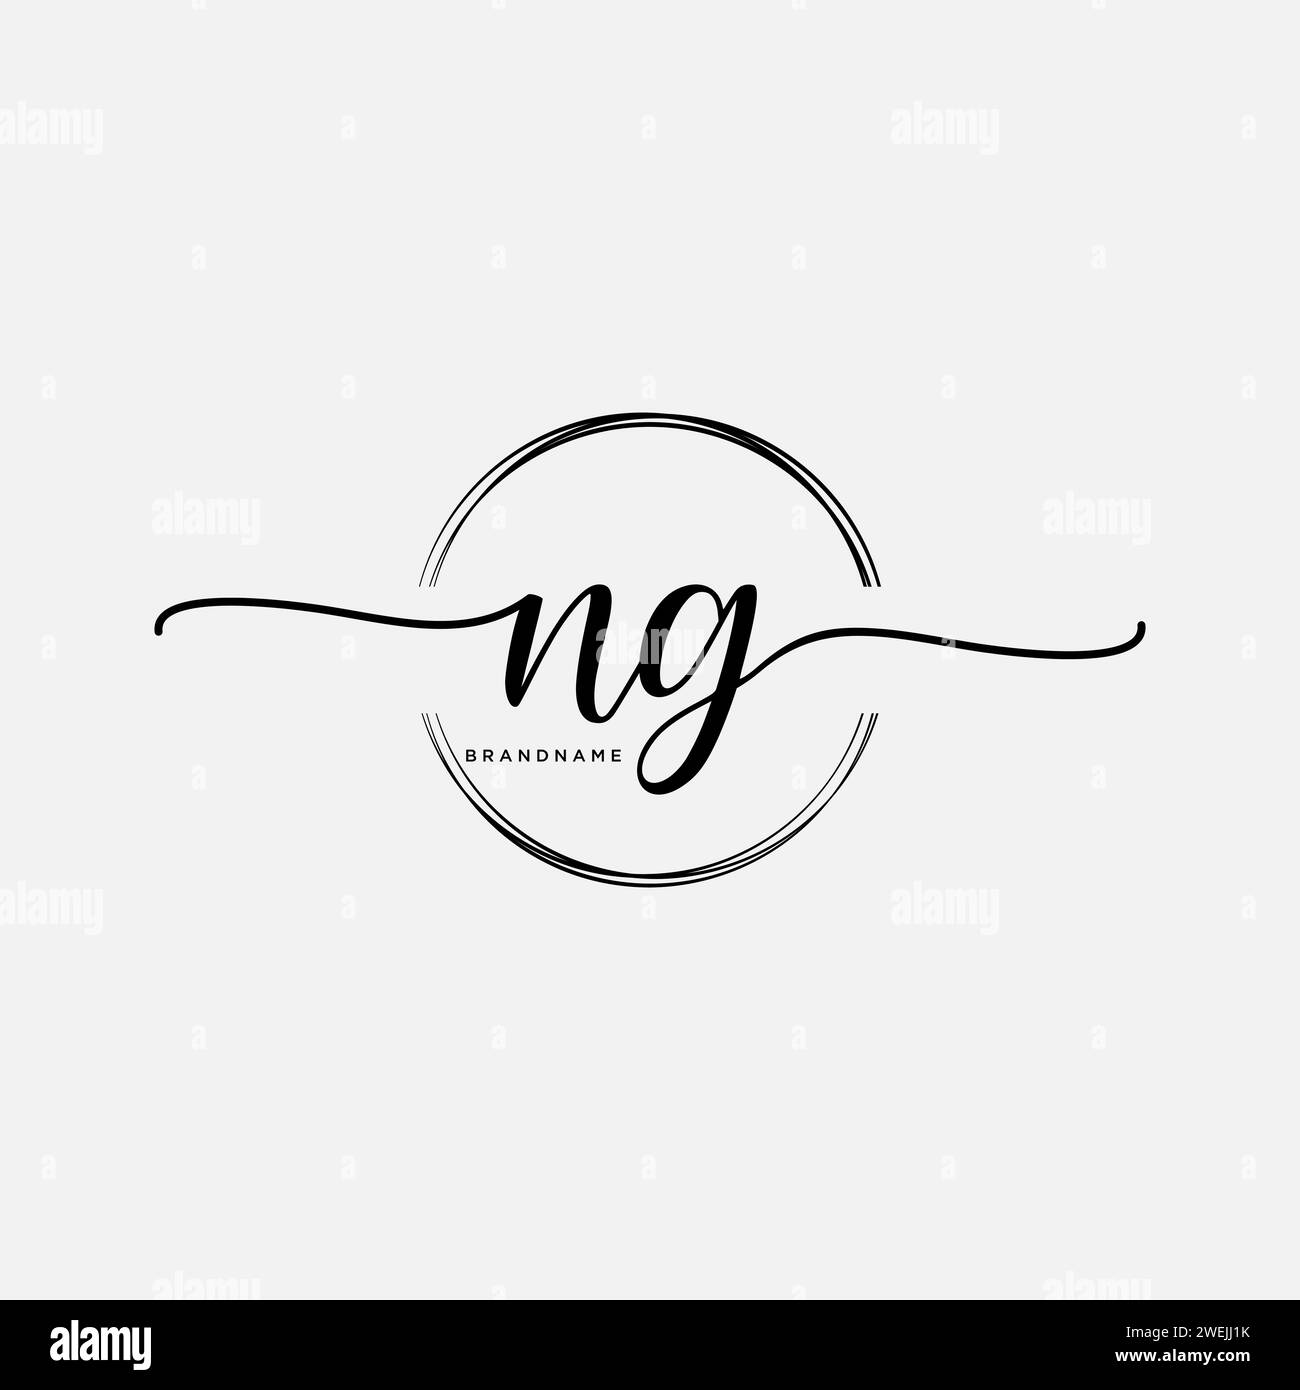 NG Initial handwriting logo with circle Stock Vector